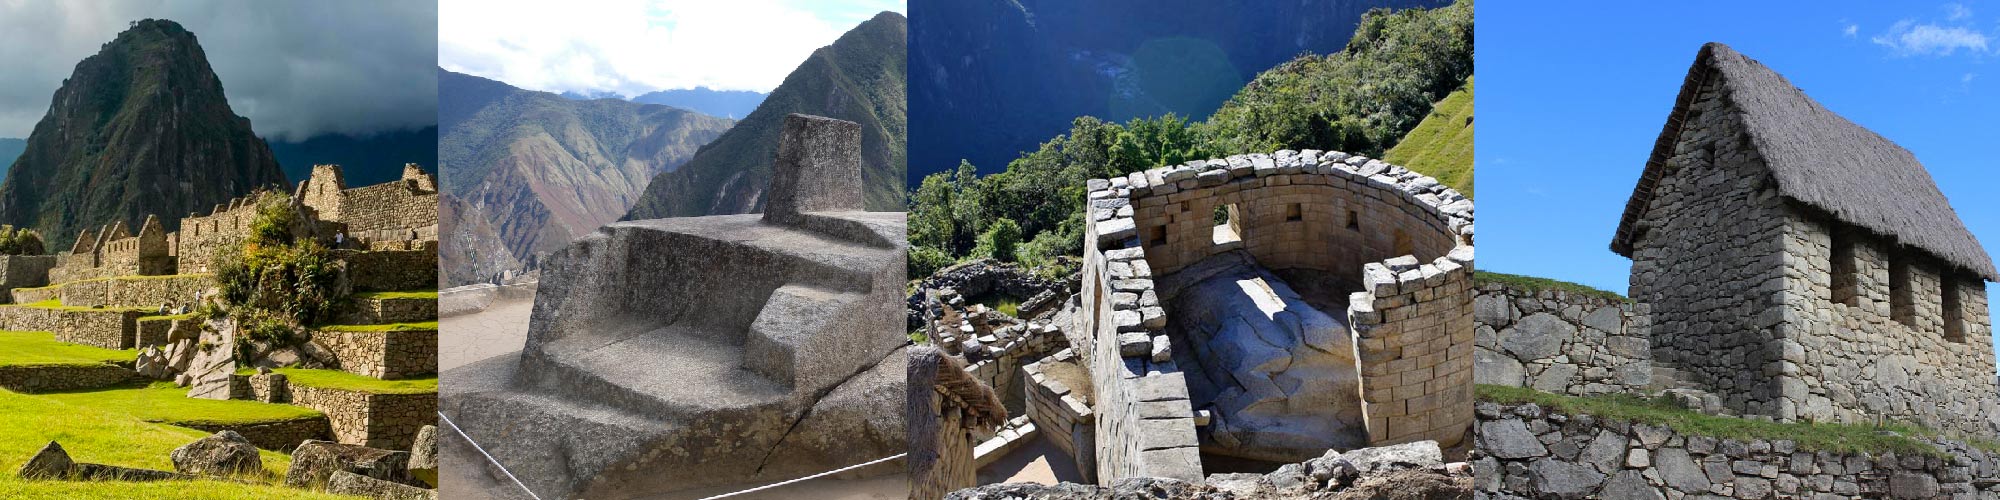 New CIRCUIT in Machu Picchu